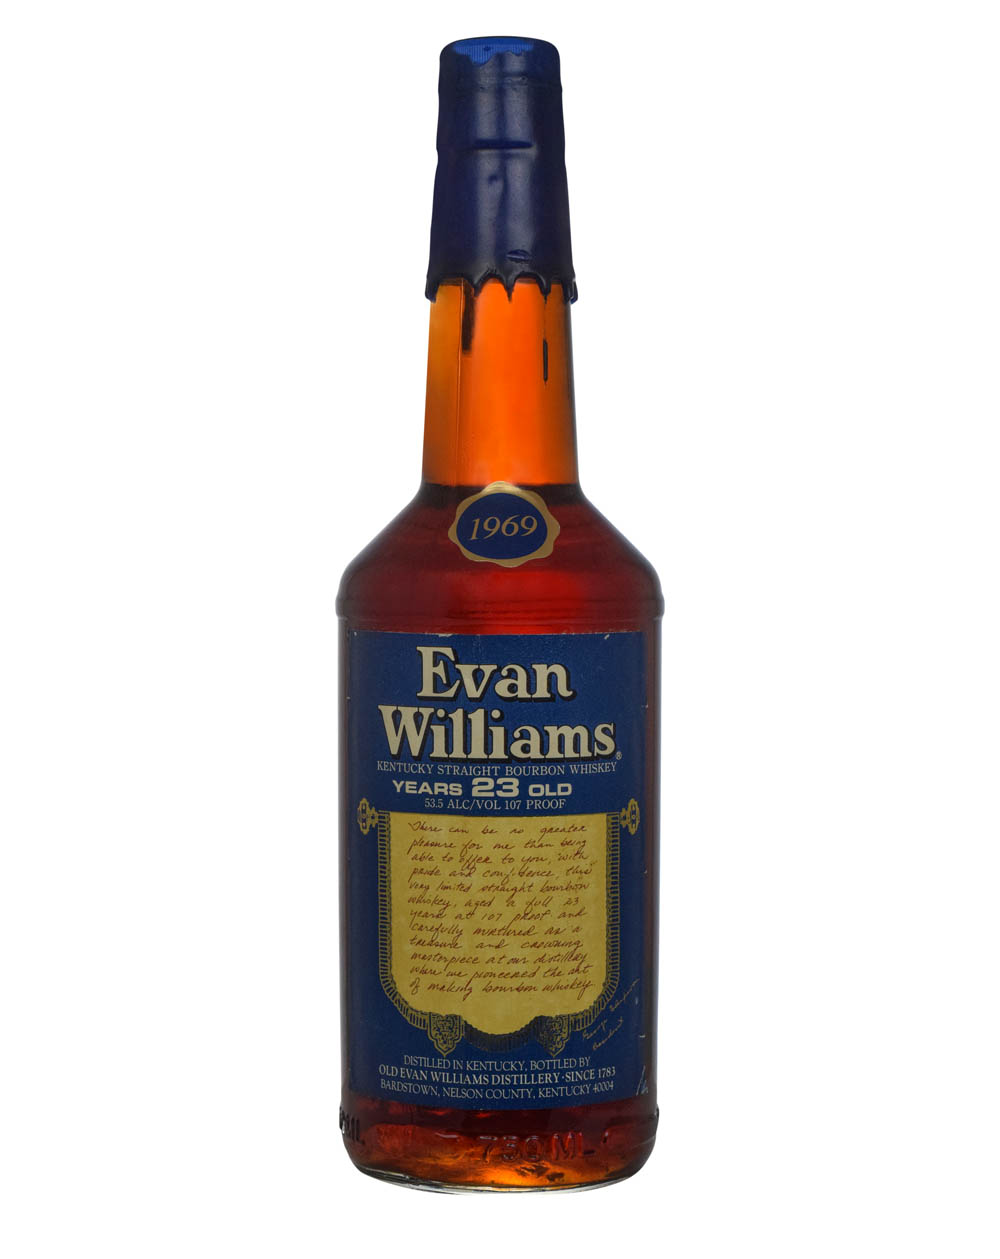 Evan Williams 23 Years Old 1969